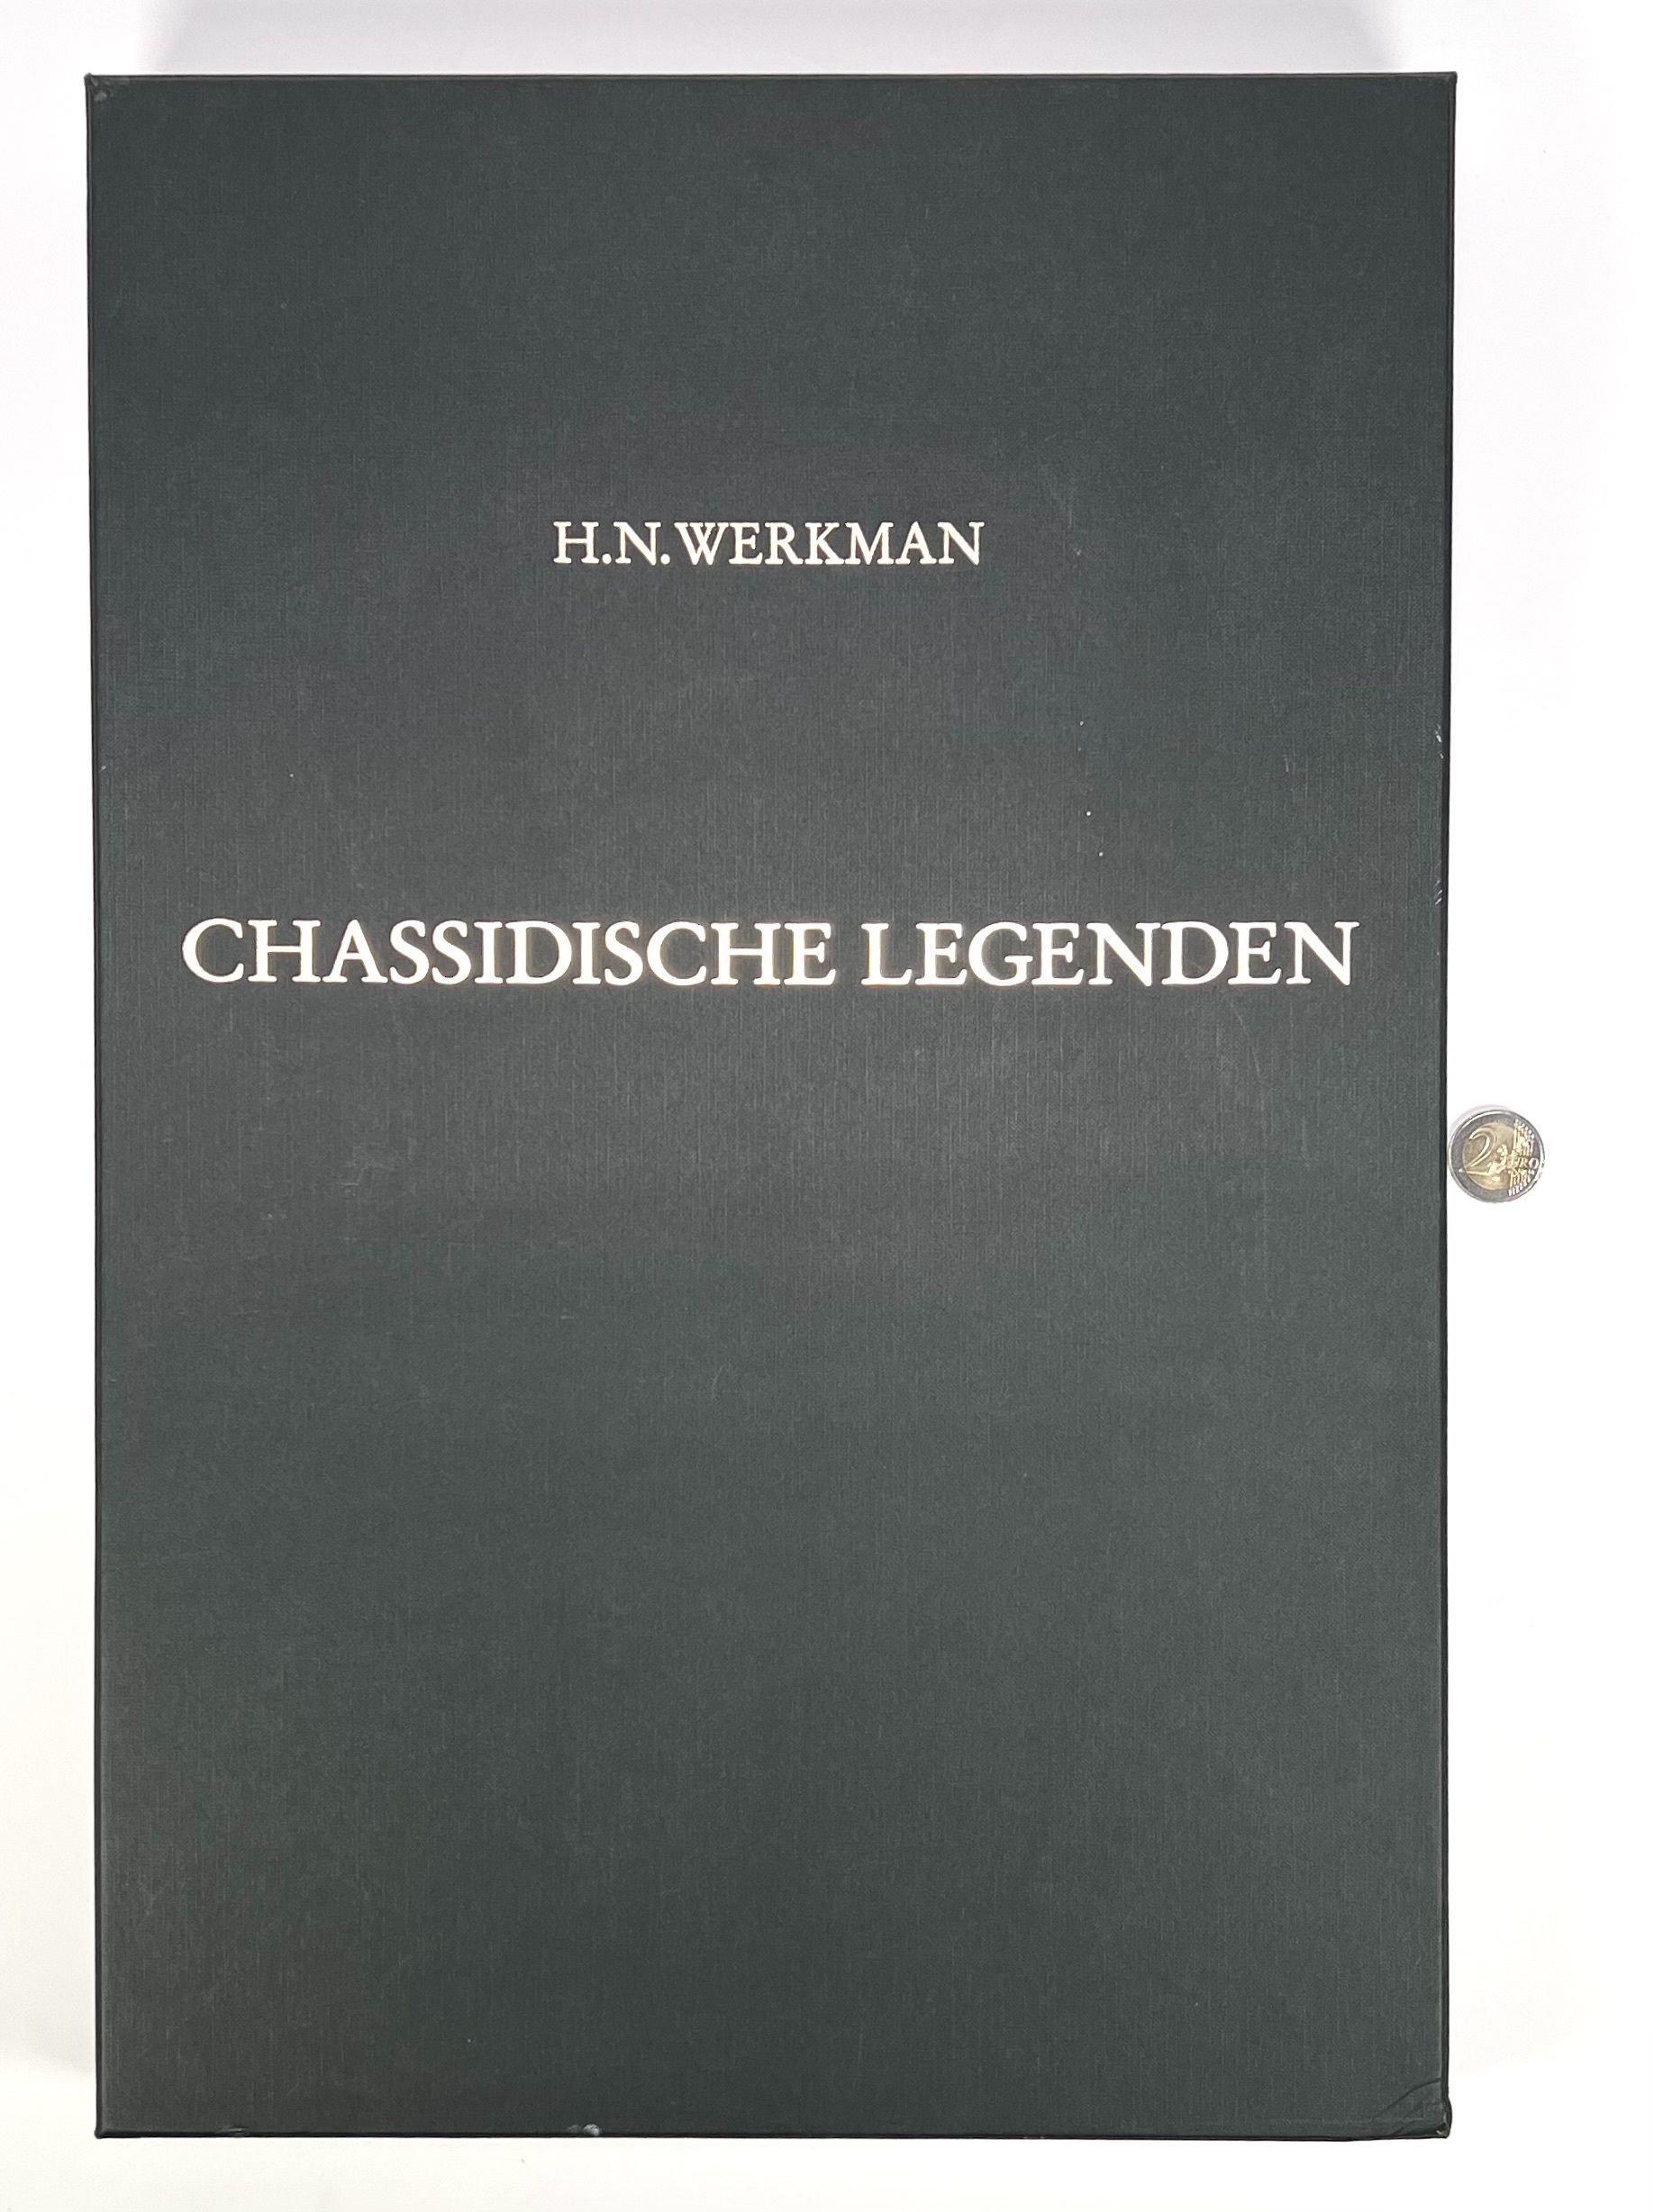 Artwork by Hendrik Nicolaas Werkman, Facsimile van de Chassidische Legenden van H.N. Werkman in box met teksten, Made of lithographs